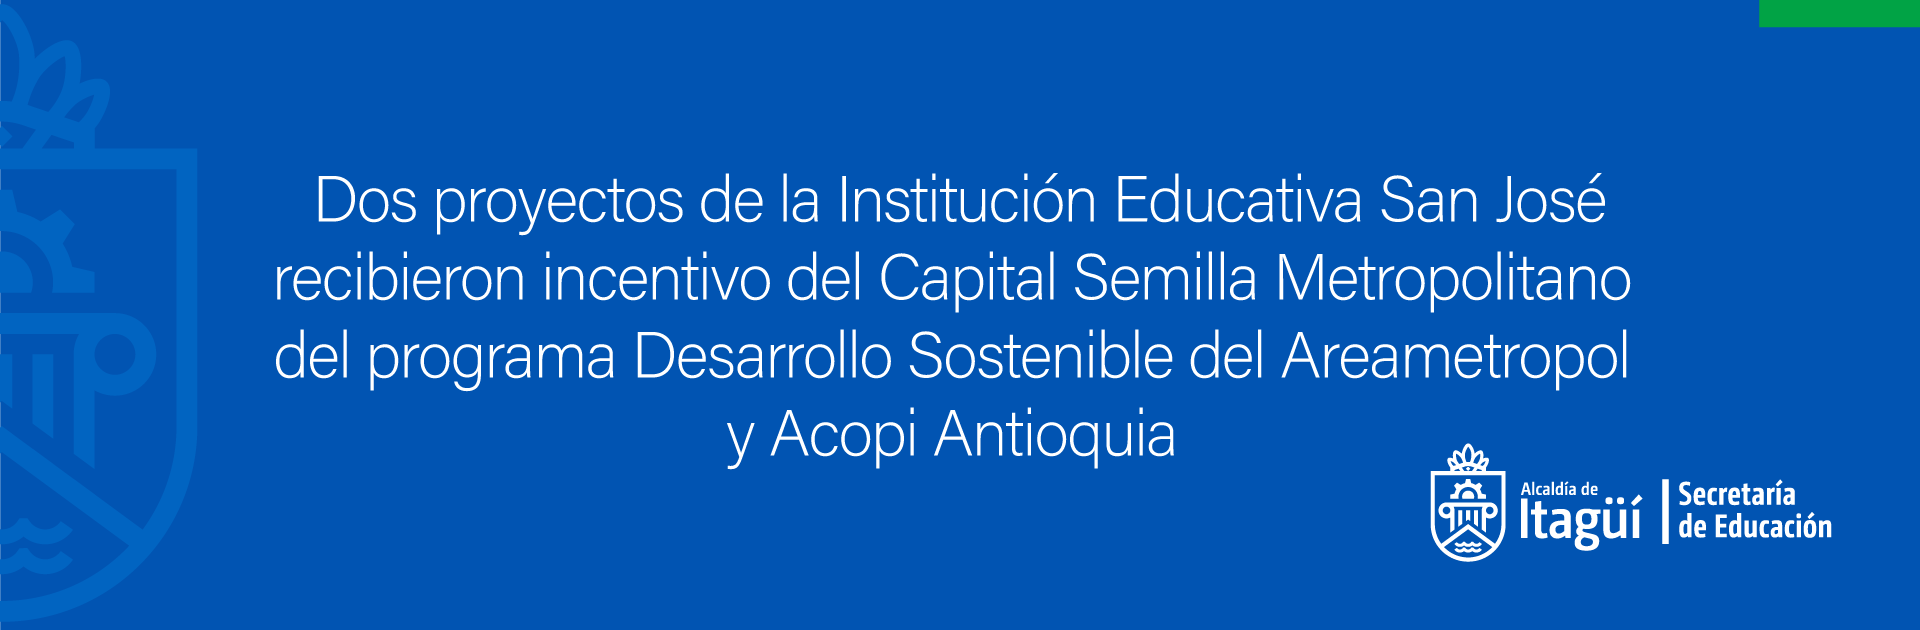 Dos proyectos de la Institución Educativa San José recibieron incentivo del Capital Semilla Metropolitano del programa Desarrollo Sostenible del Areametropol  y Acopi Antioquia